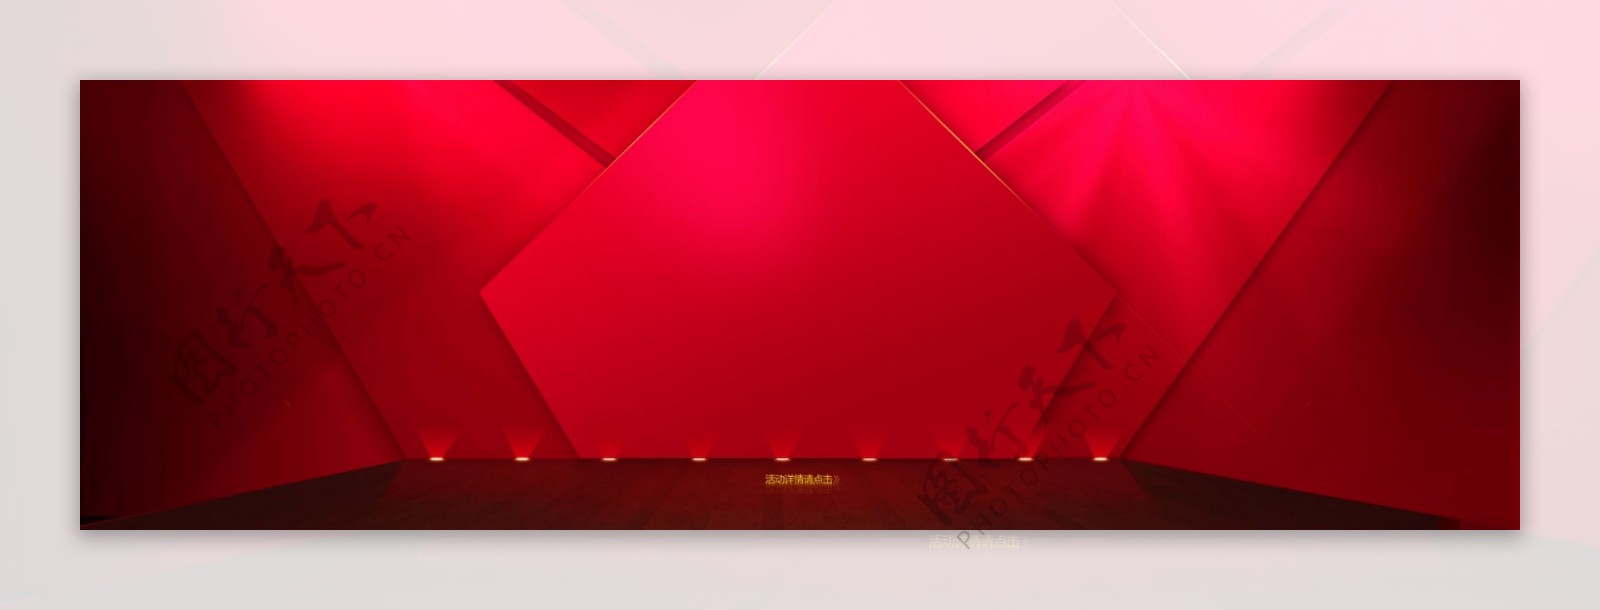 淘宝天猫首页海报红色背景舞台背景